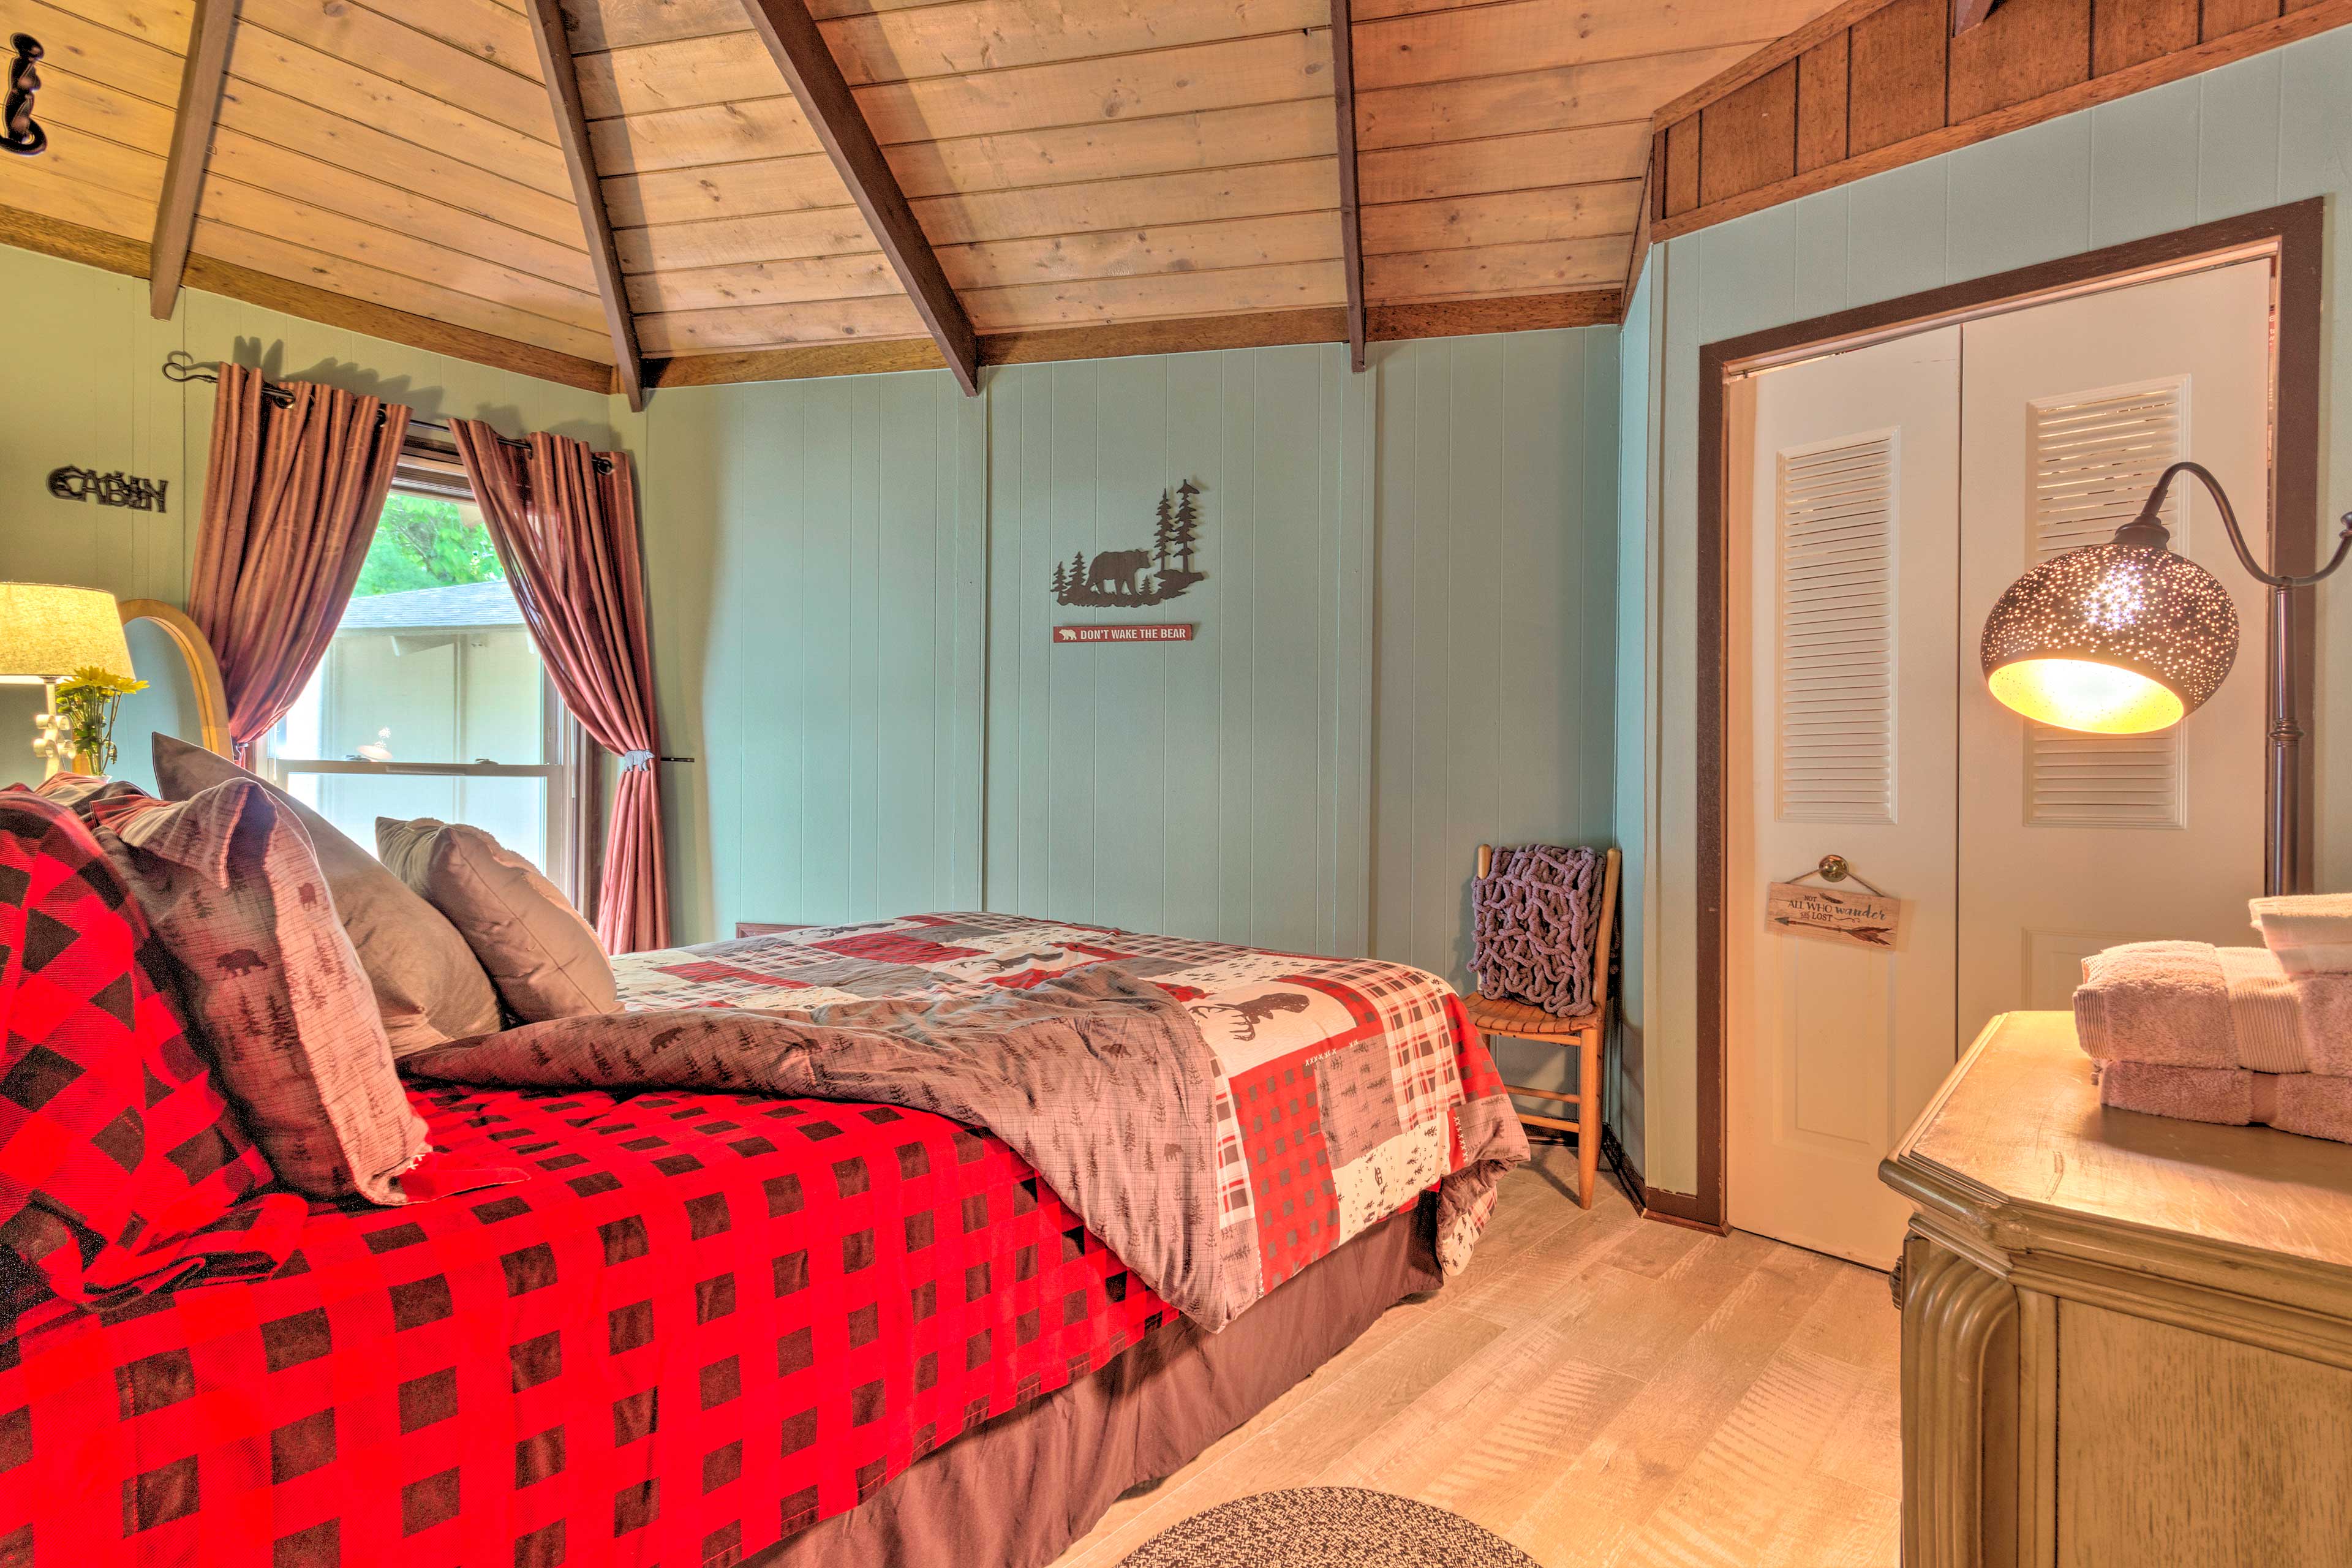 This cozy bedroom ensures full nights of sleep!